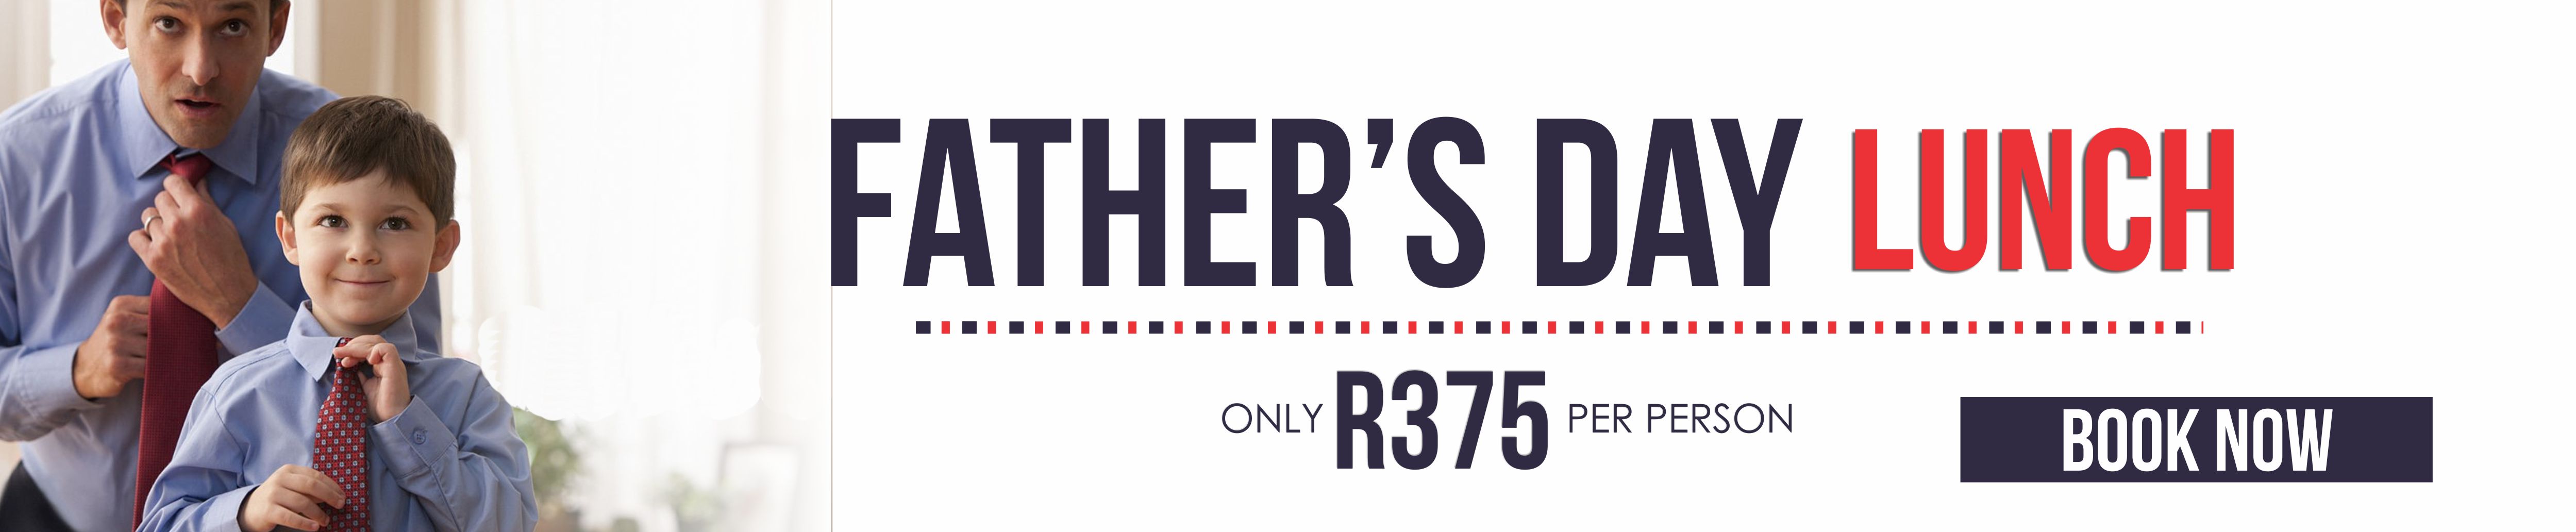 Fathers Day Lunch at Carnivore Restaurant Muldersdrift Gauteng